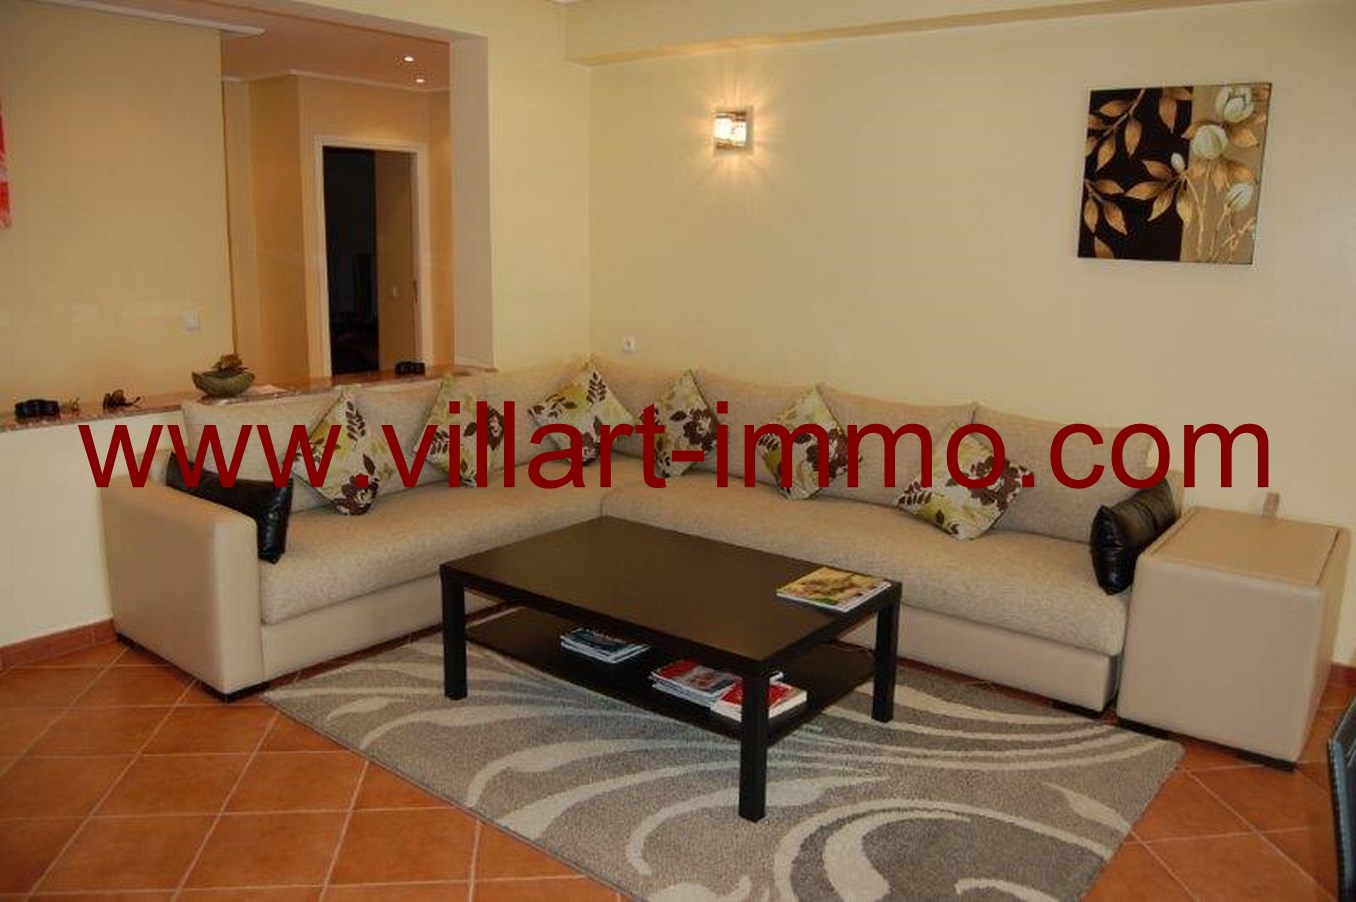 2-Location-Appartement- meublé-Tanger-salon-L634-Villart-immo